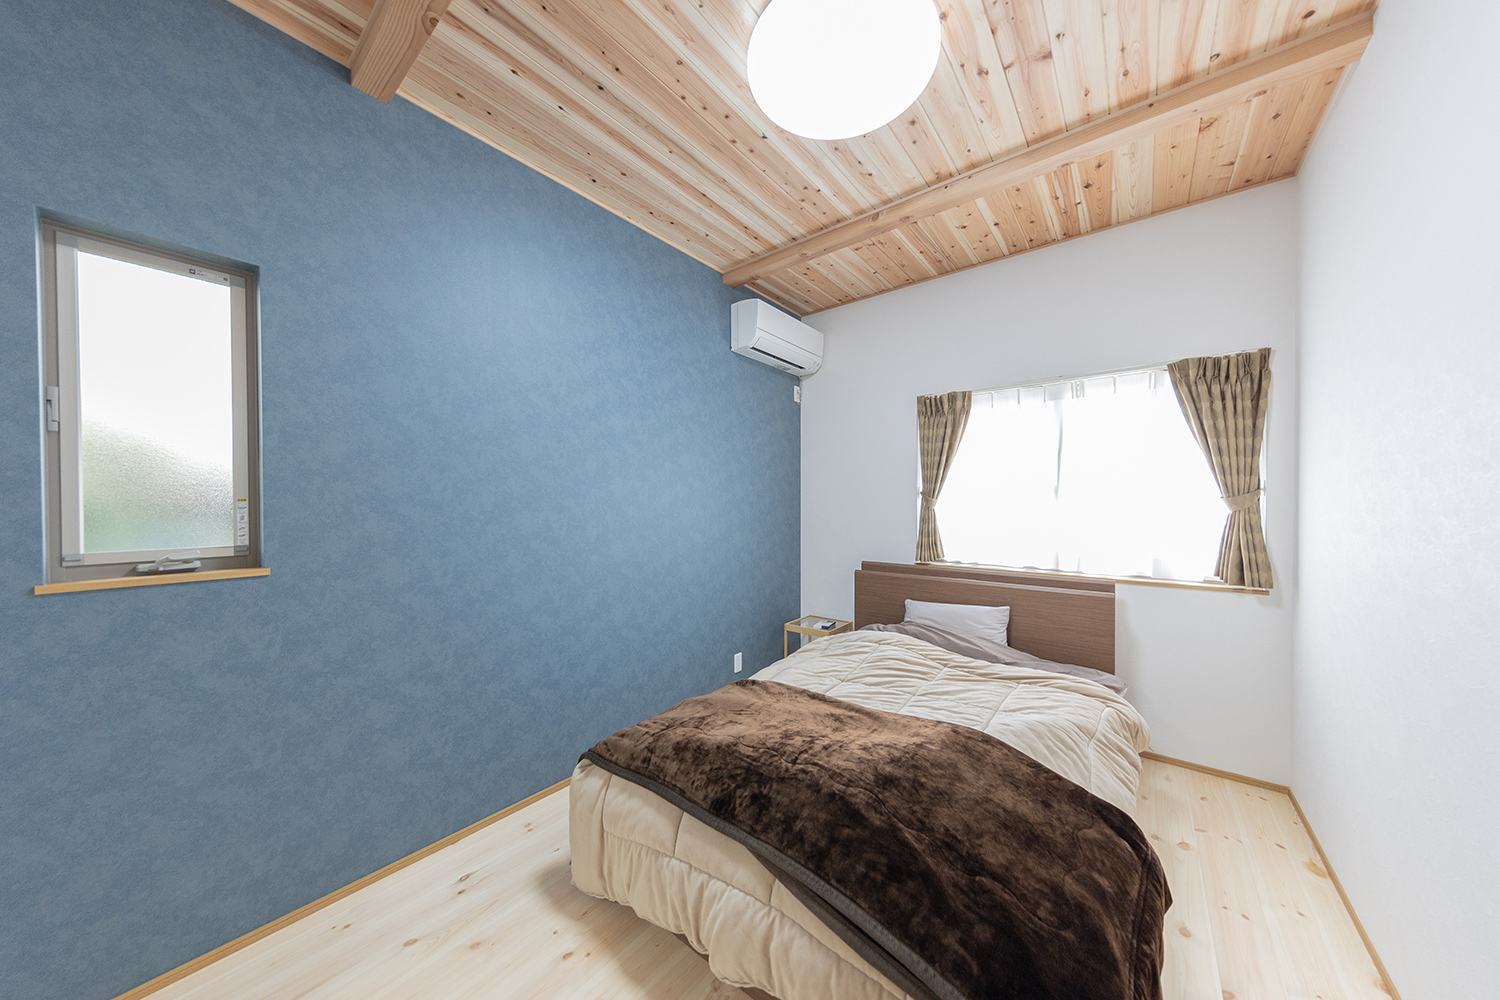 和歌山市 新築 木の家 平屋 寝室